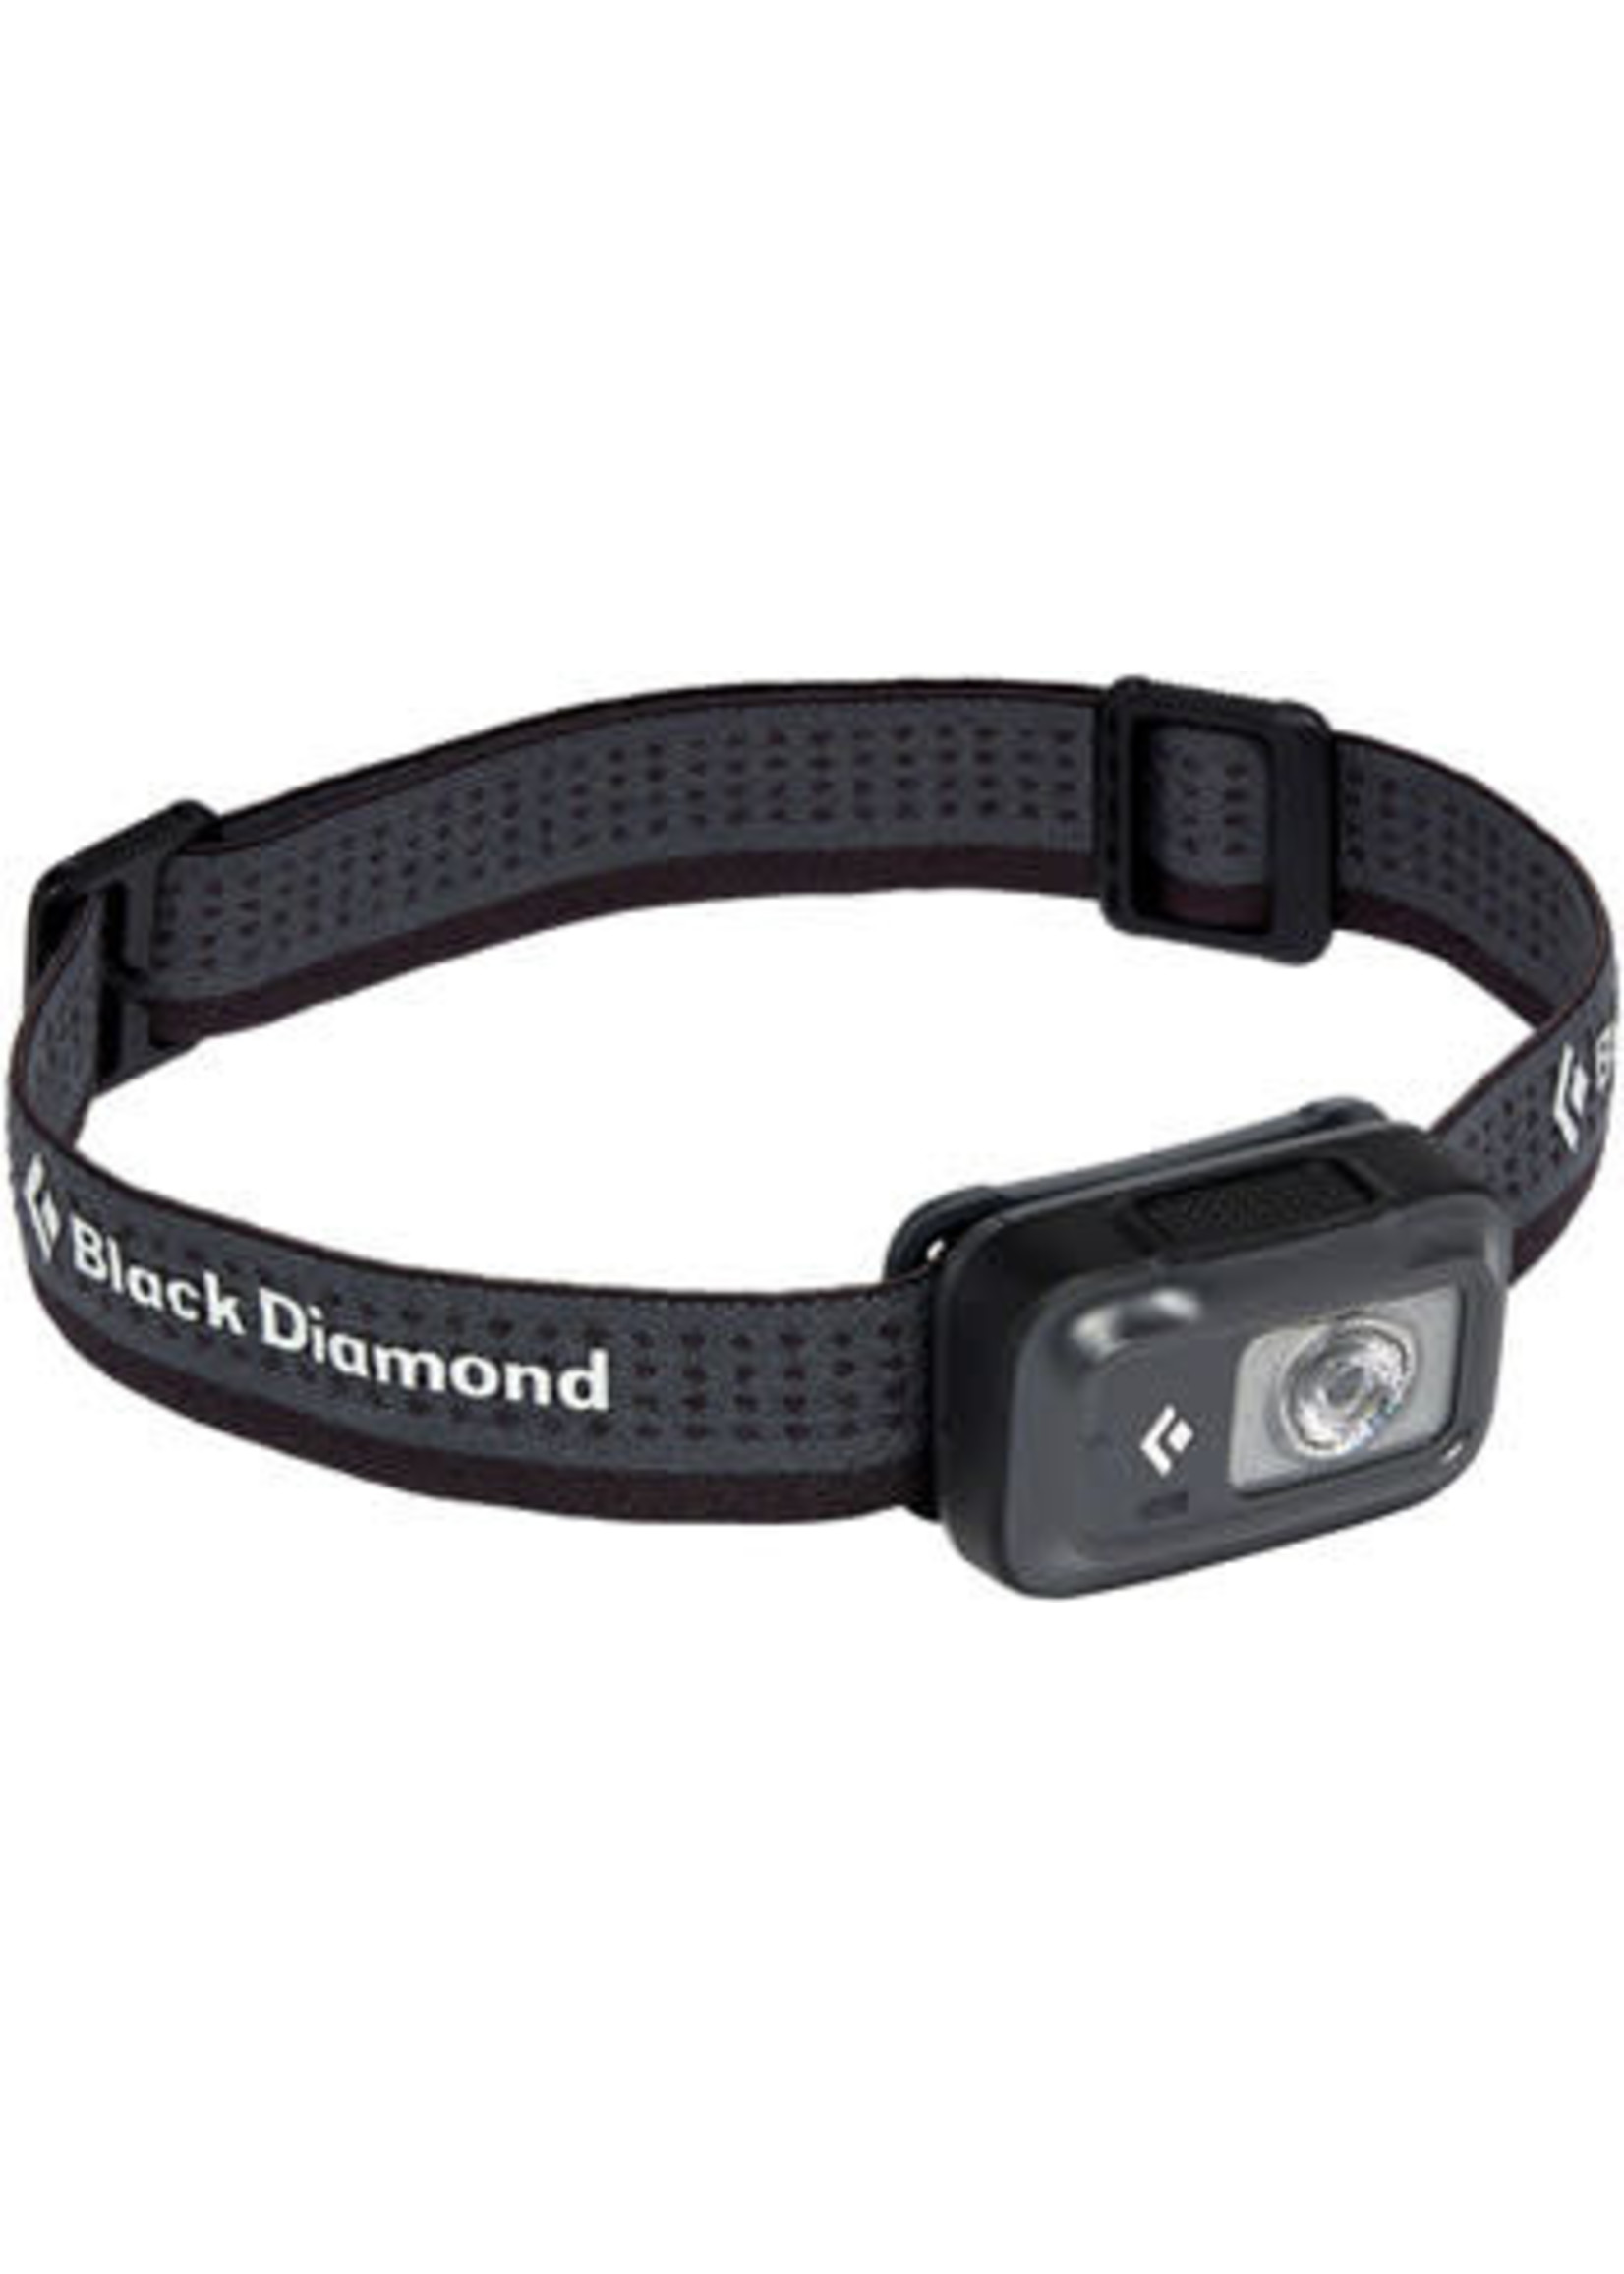 Black Diamond Black Diamond Astro 250 Headlamp